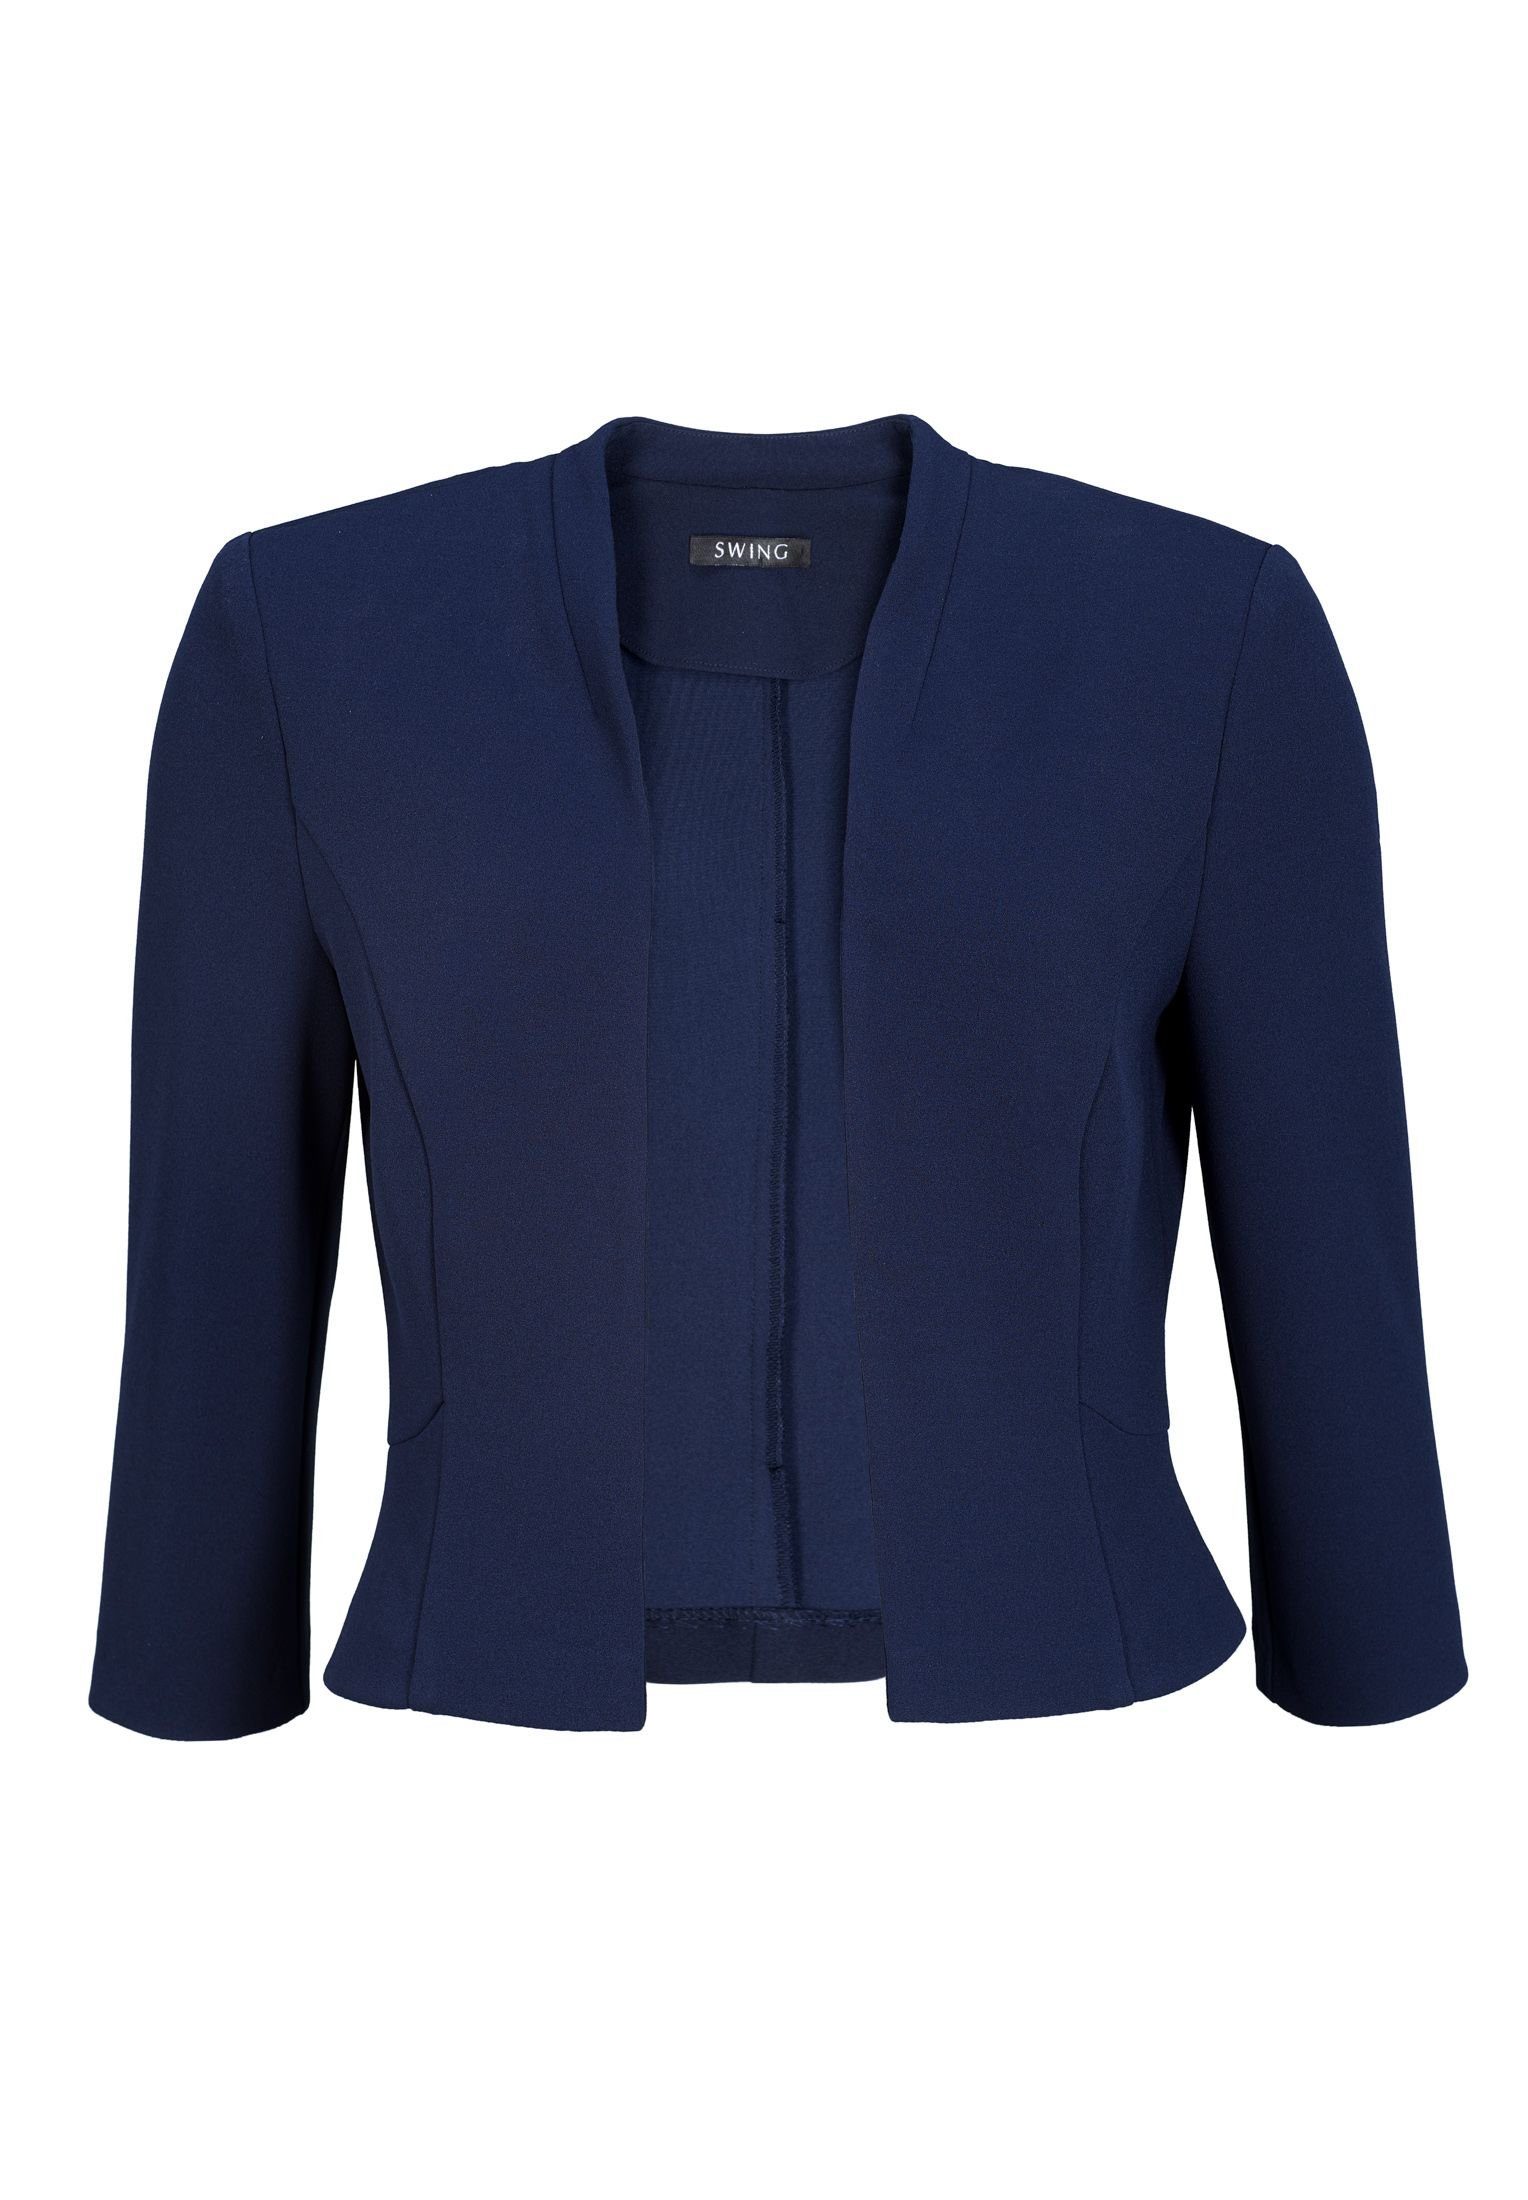 SWING Boleroblazer - Taillierte Jacke - Jacket für Kleider  aus Jersey Crêpe